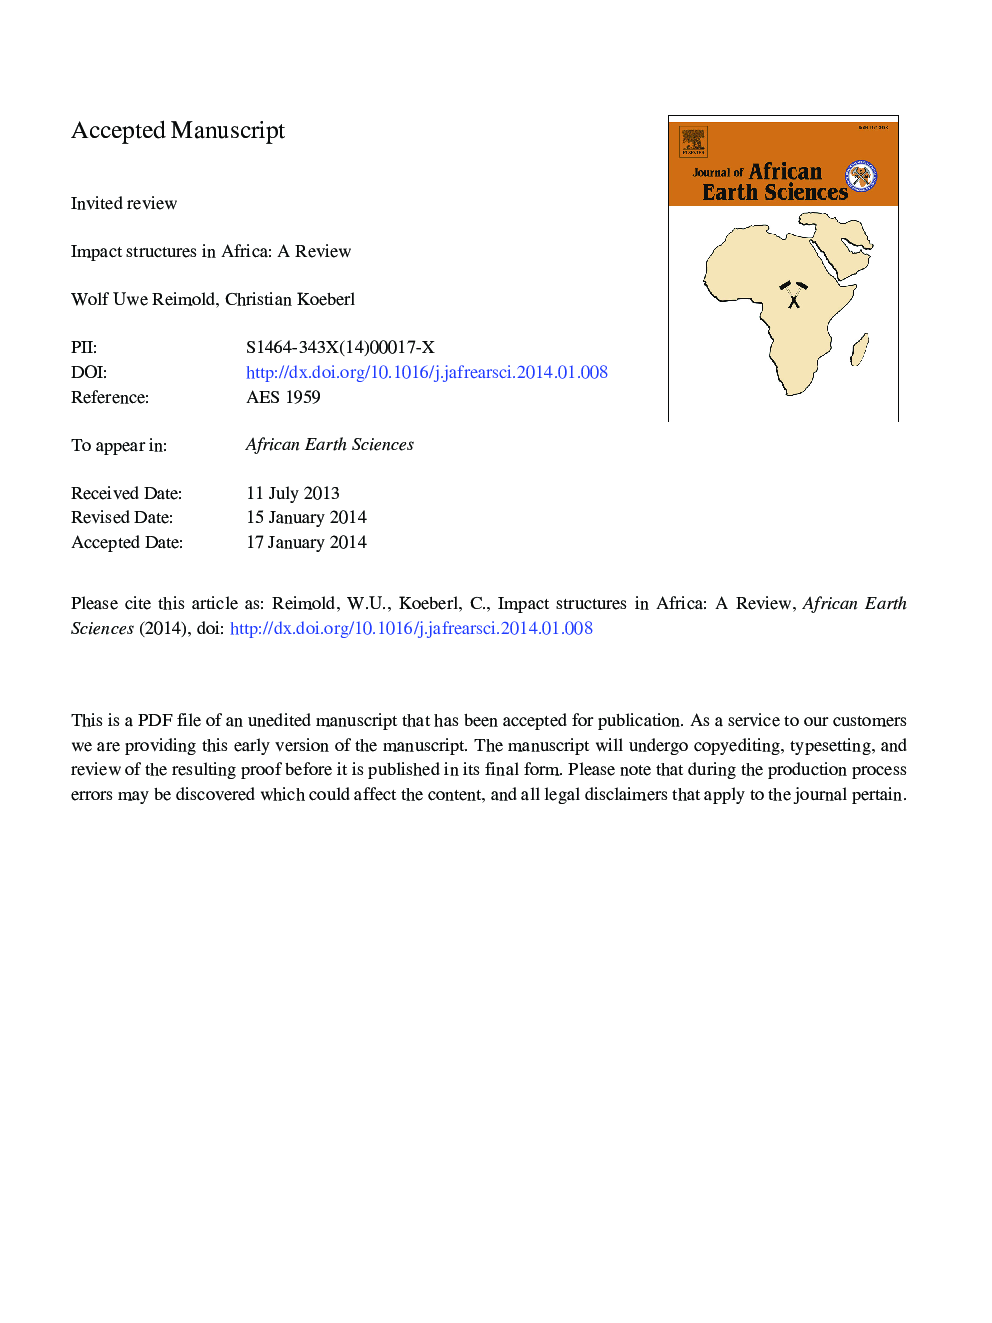 ساختارهای تاثیر گذاری در آفریقا: بررسی 